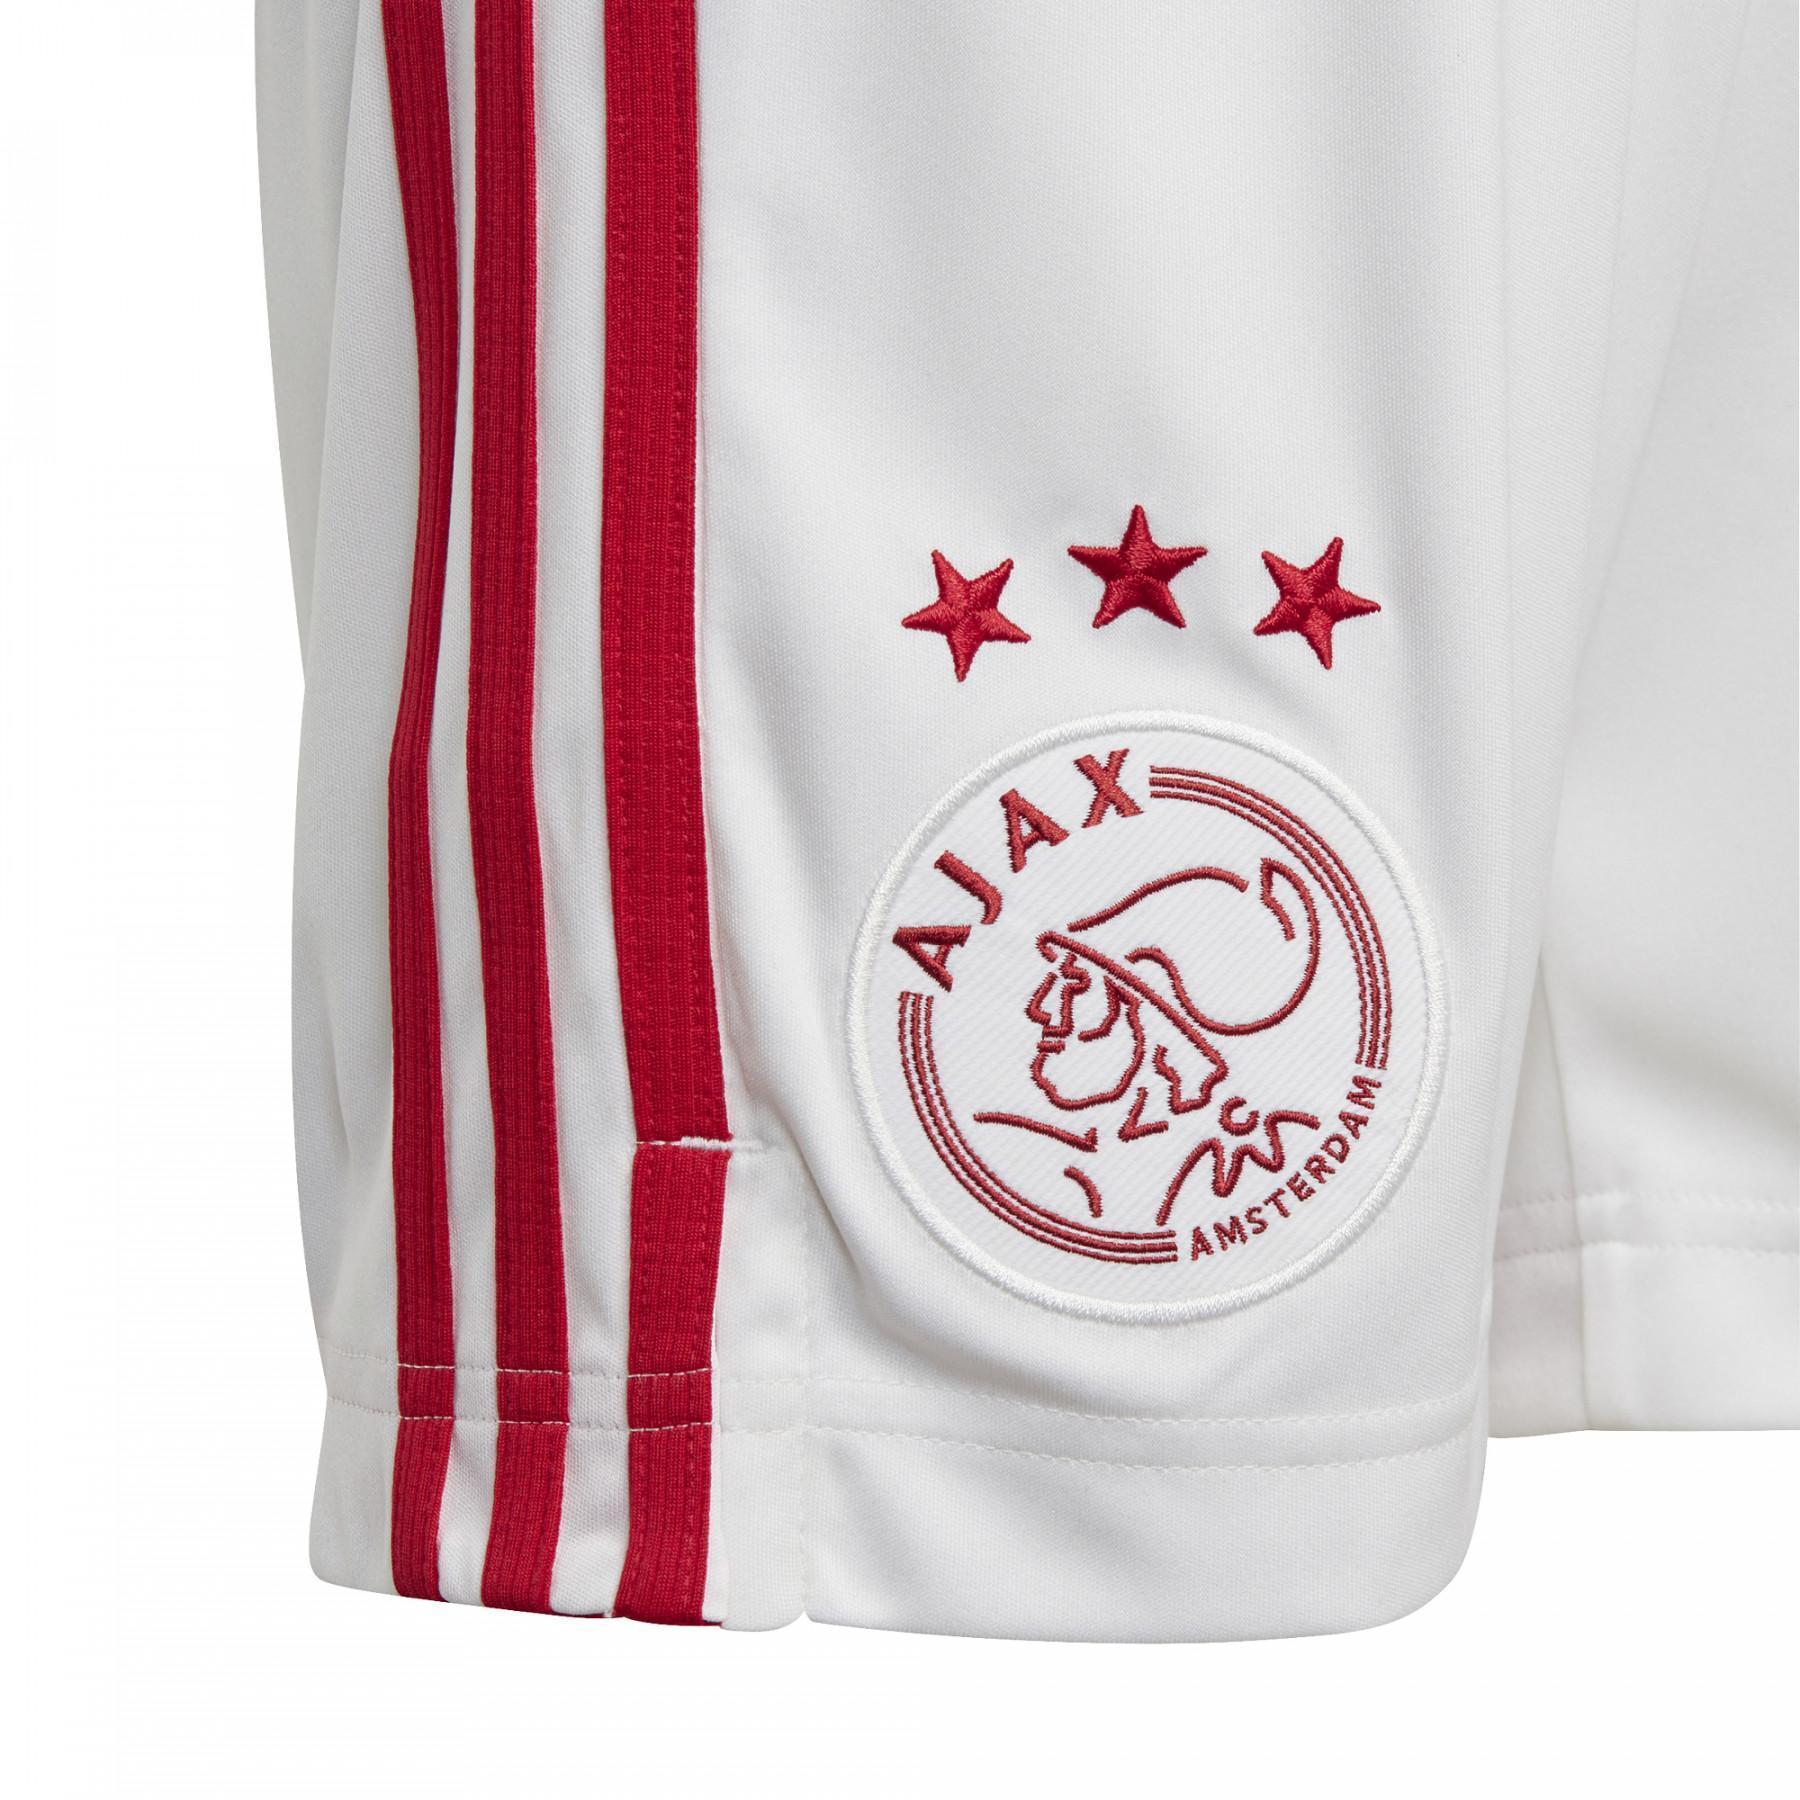 Barnens hem shorts Ajax Amsterdam 2020/21